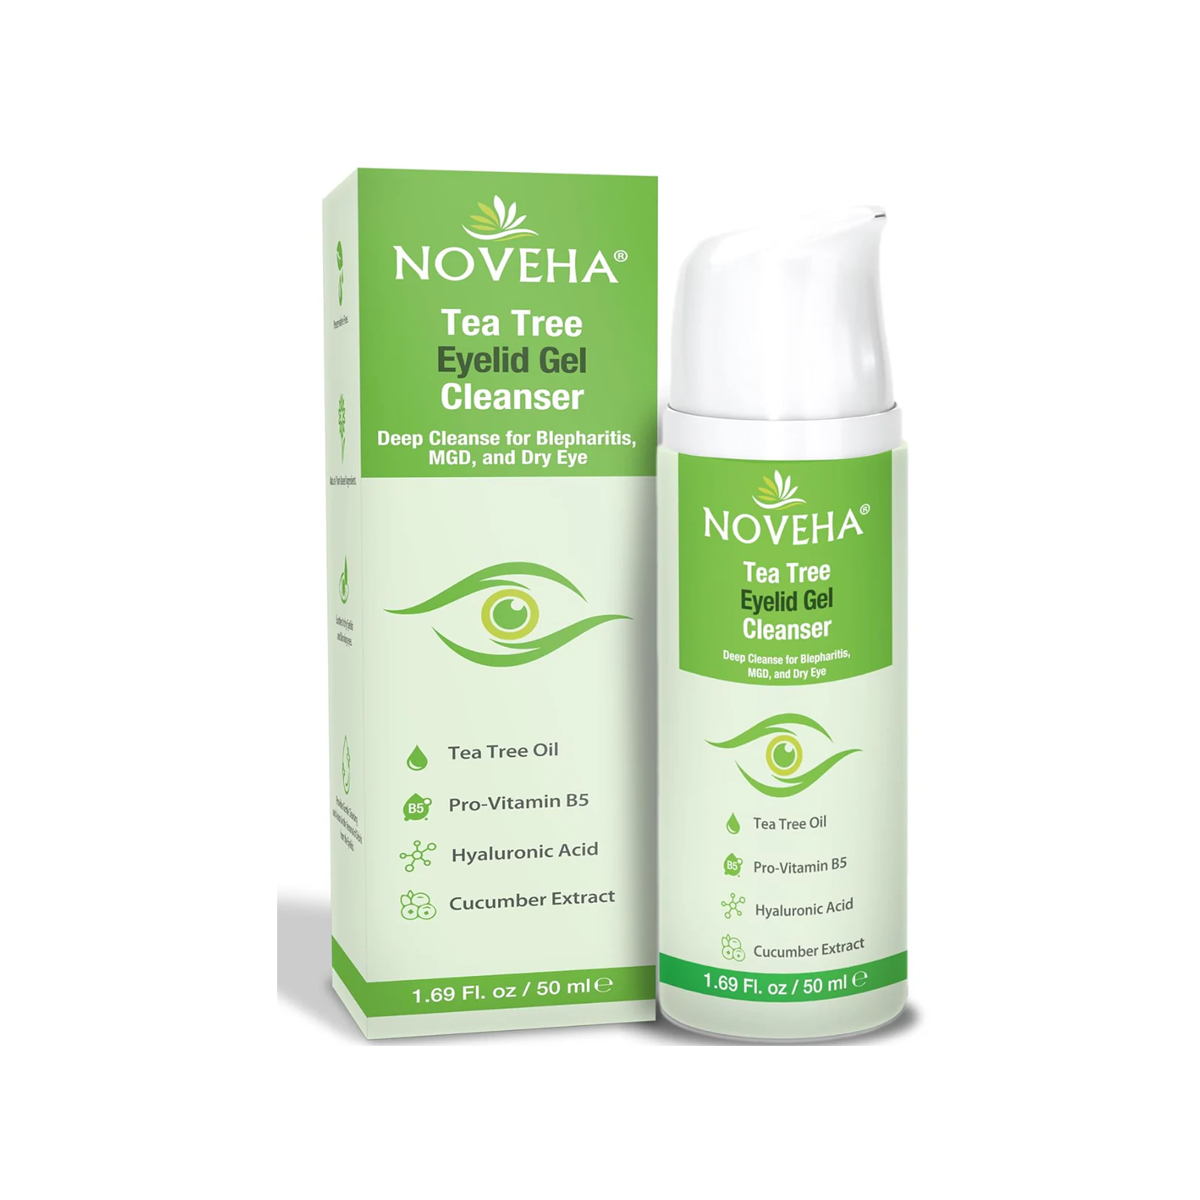 Noveha Tea Tree Eyelid Gel Cleanser for Blepharitis, MGD and Dry Eyes (50mL)